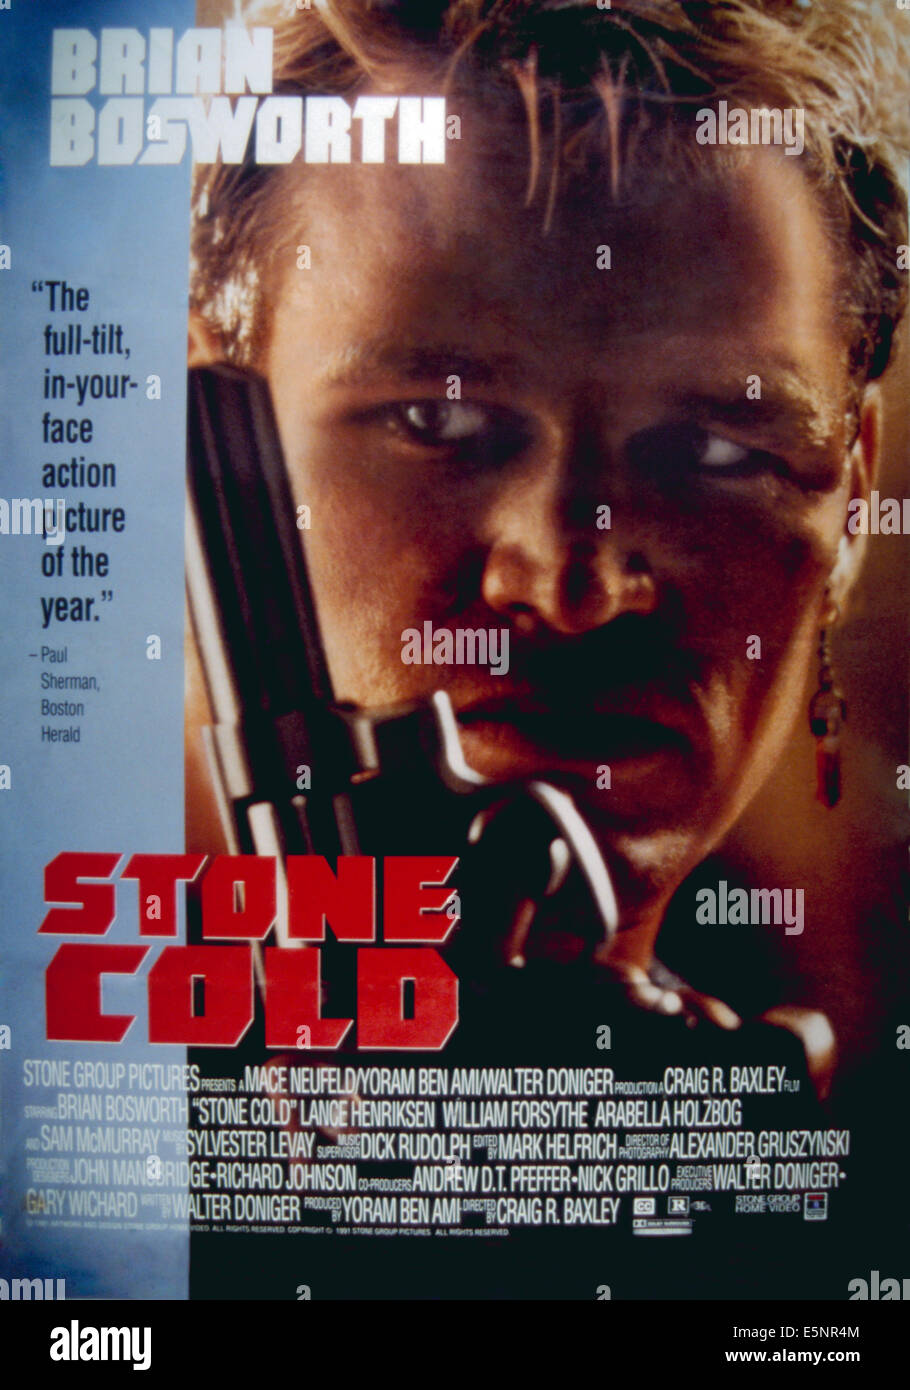 STONE COLD, Brian Bosworth, 1991. Stock Photo